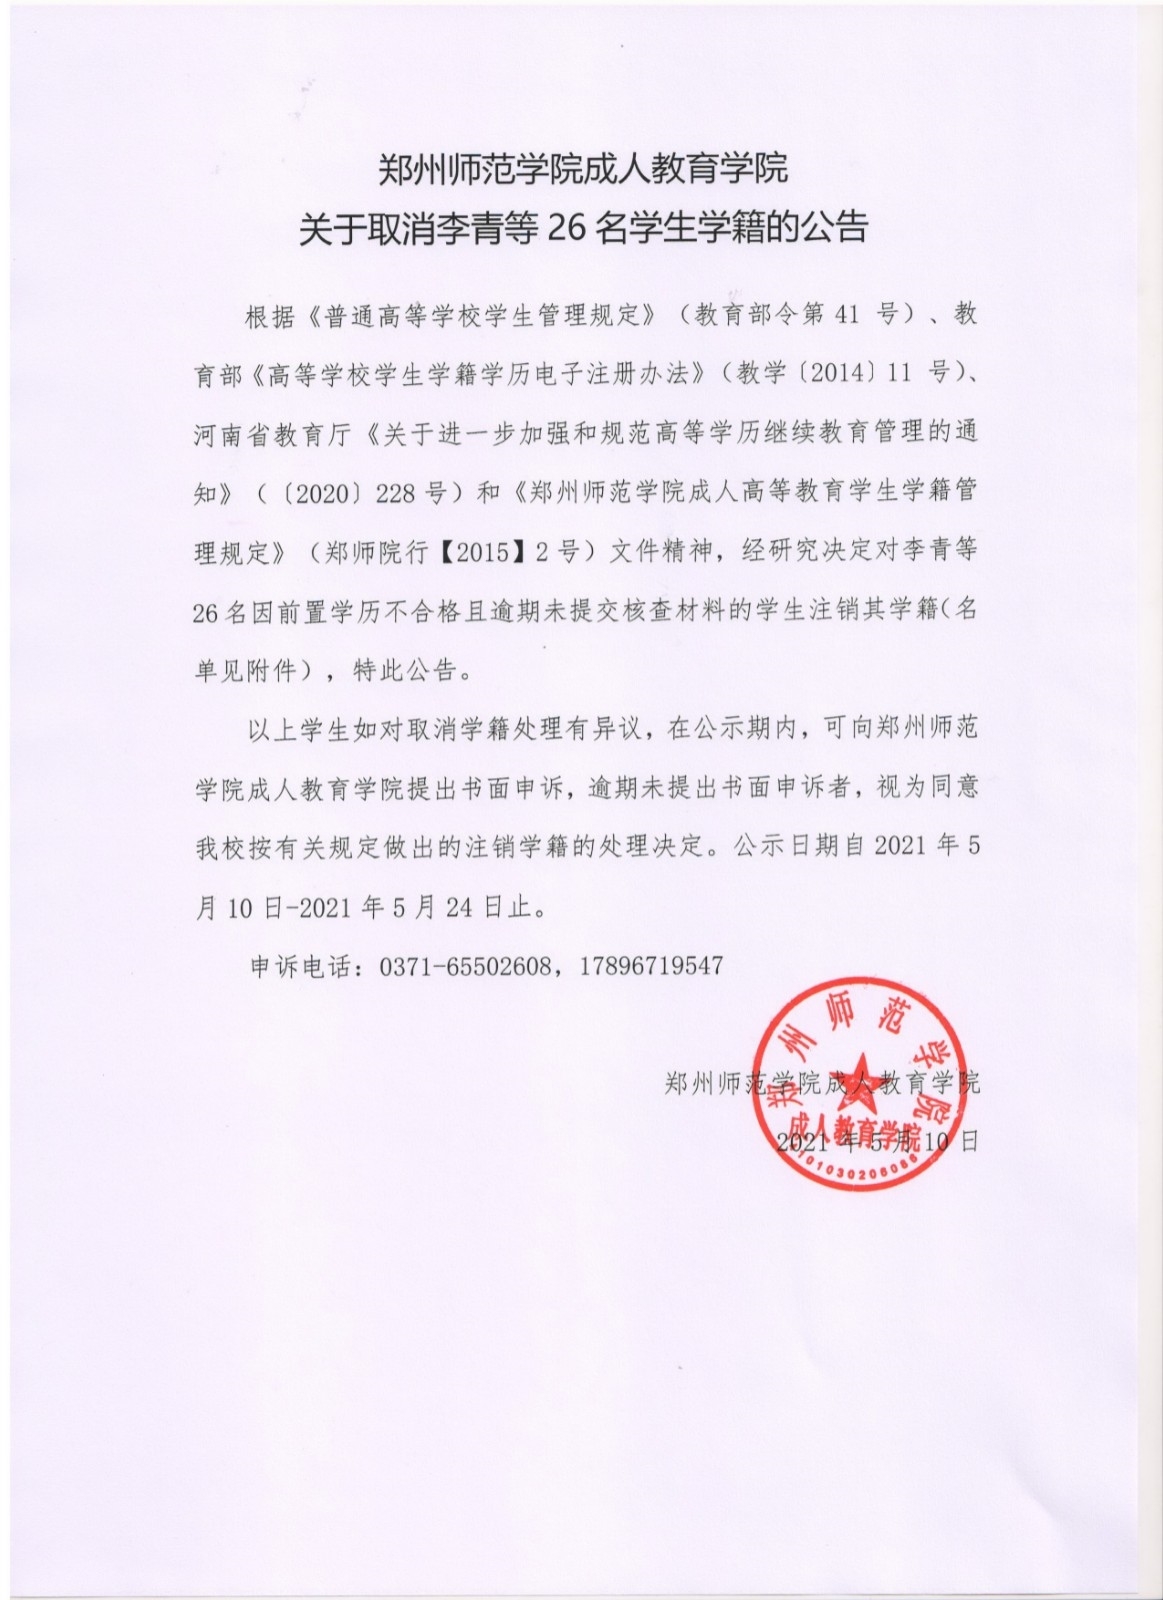 郑州师范学院成人教育学院关于取消李青等26名学生学籍的公告